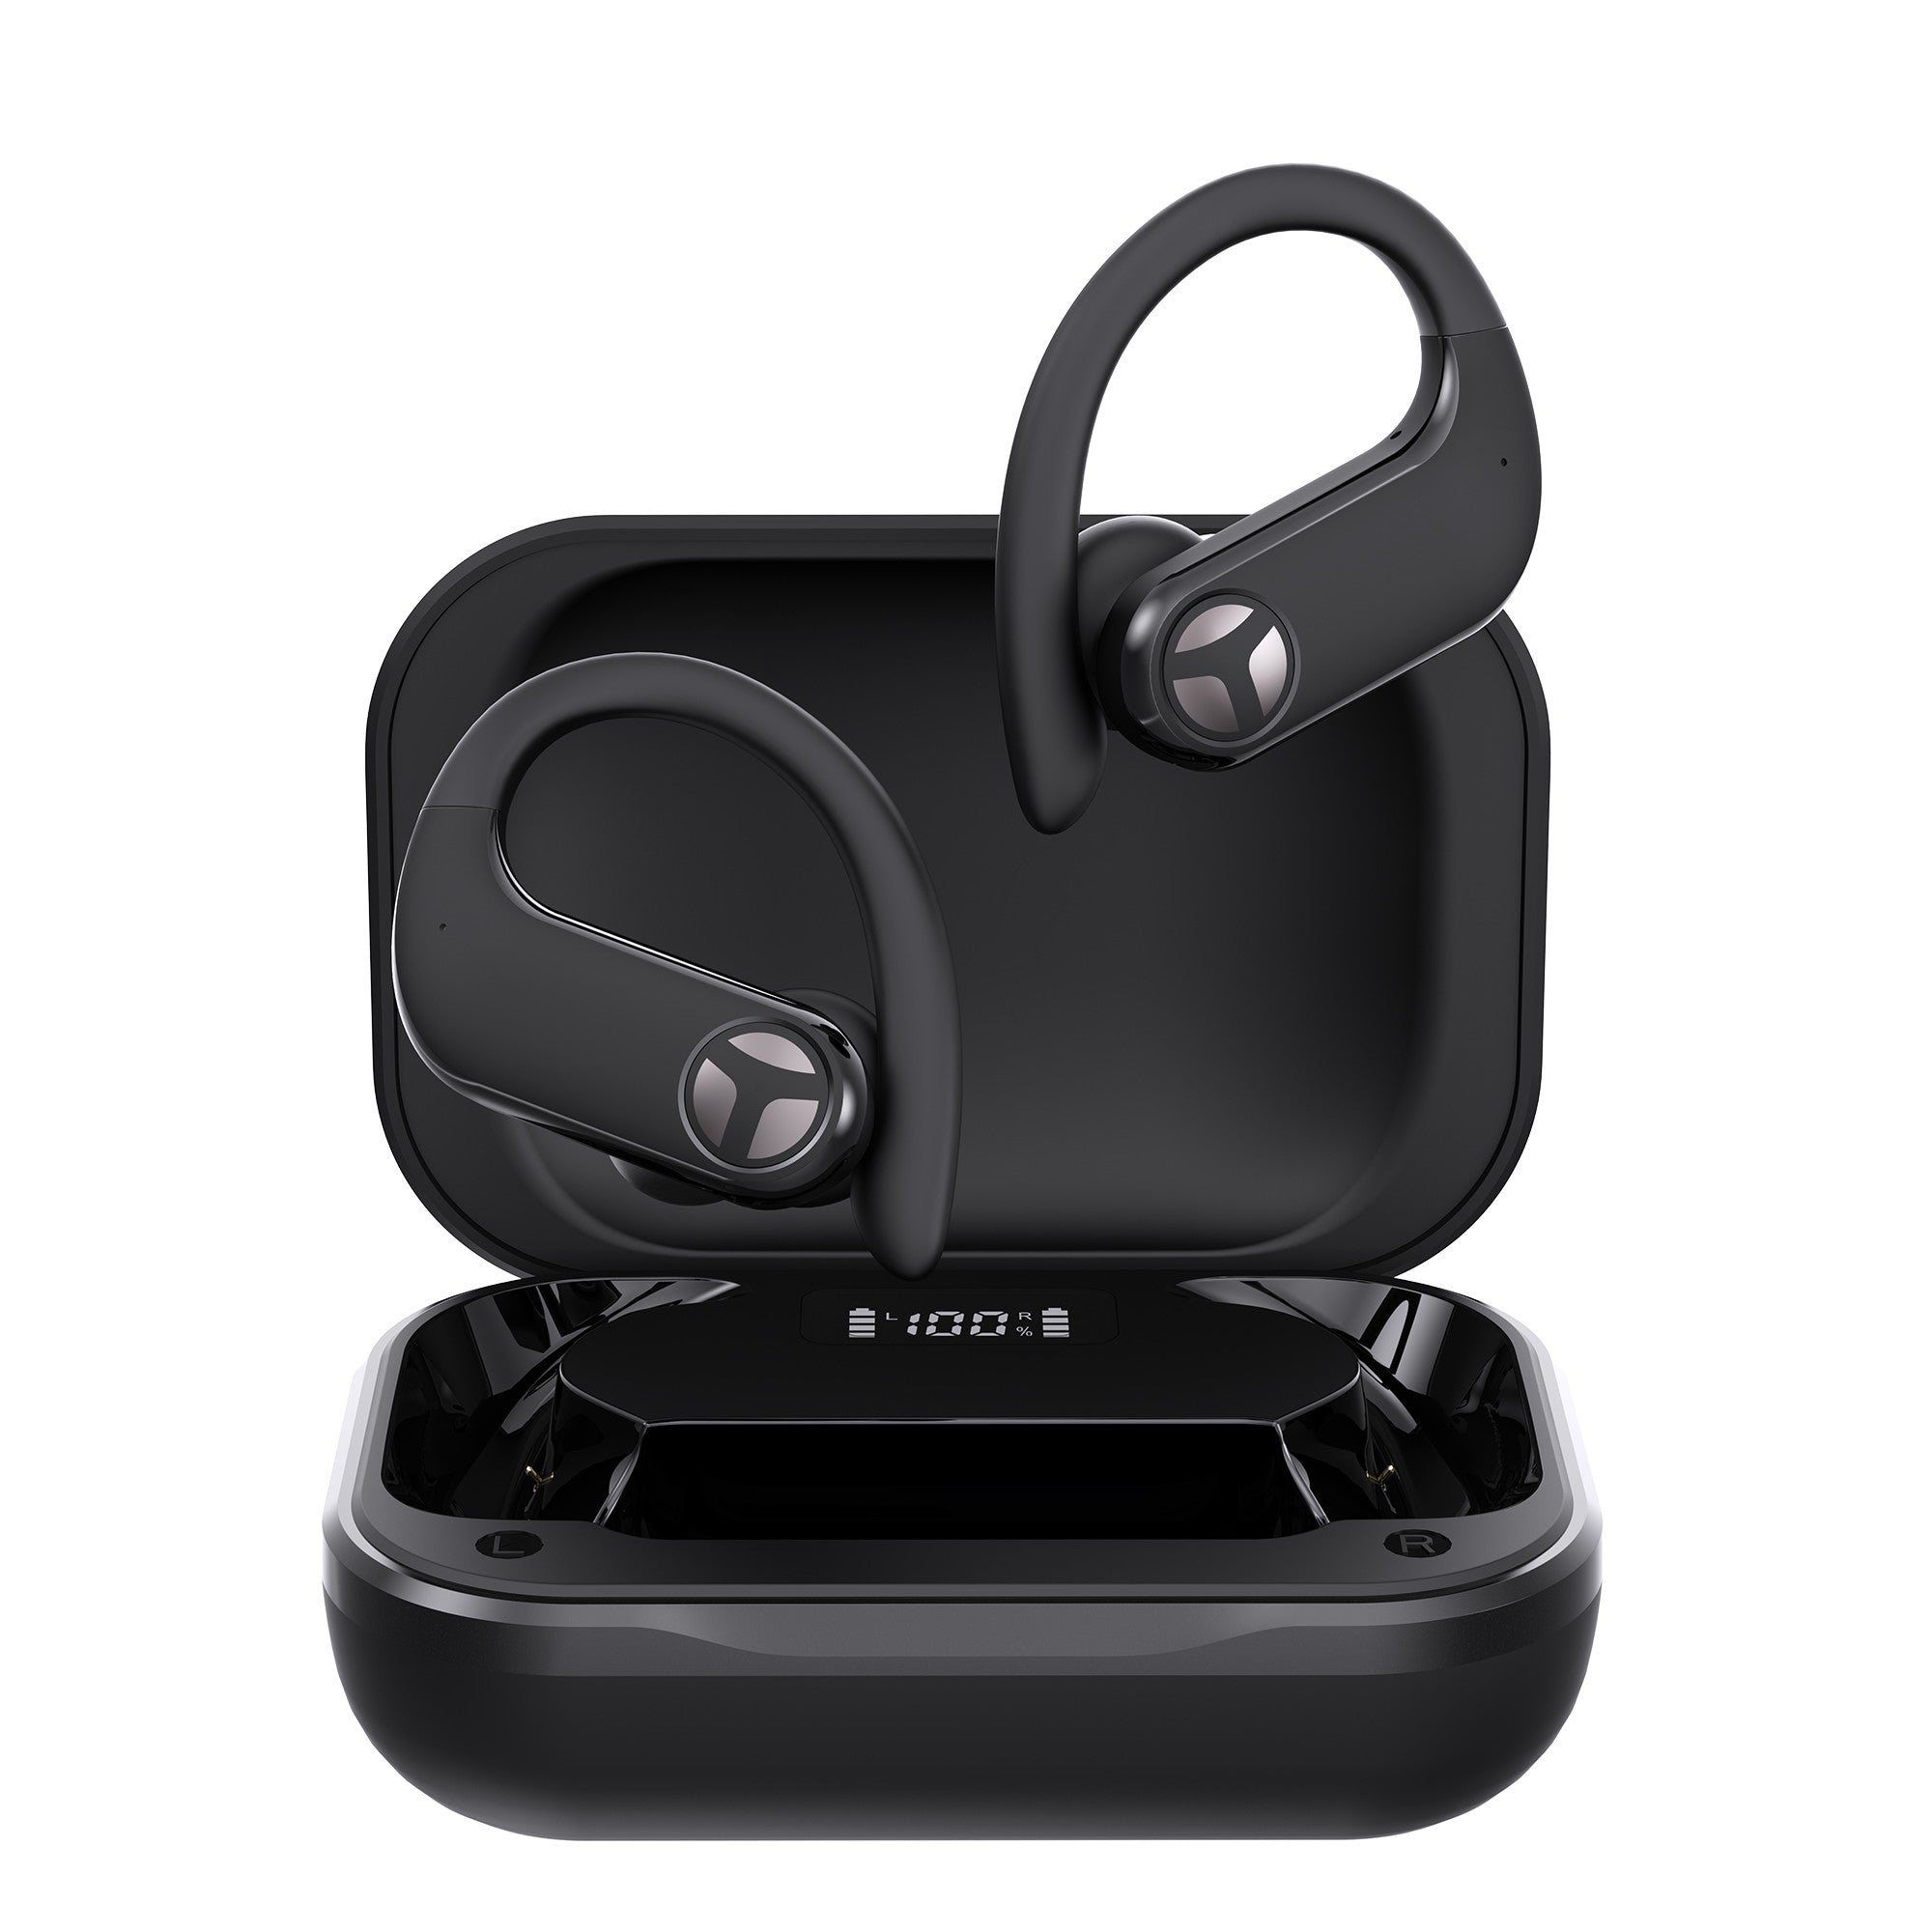 Tranya X1 True wireless in-ear headphones earbuds